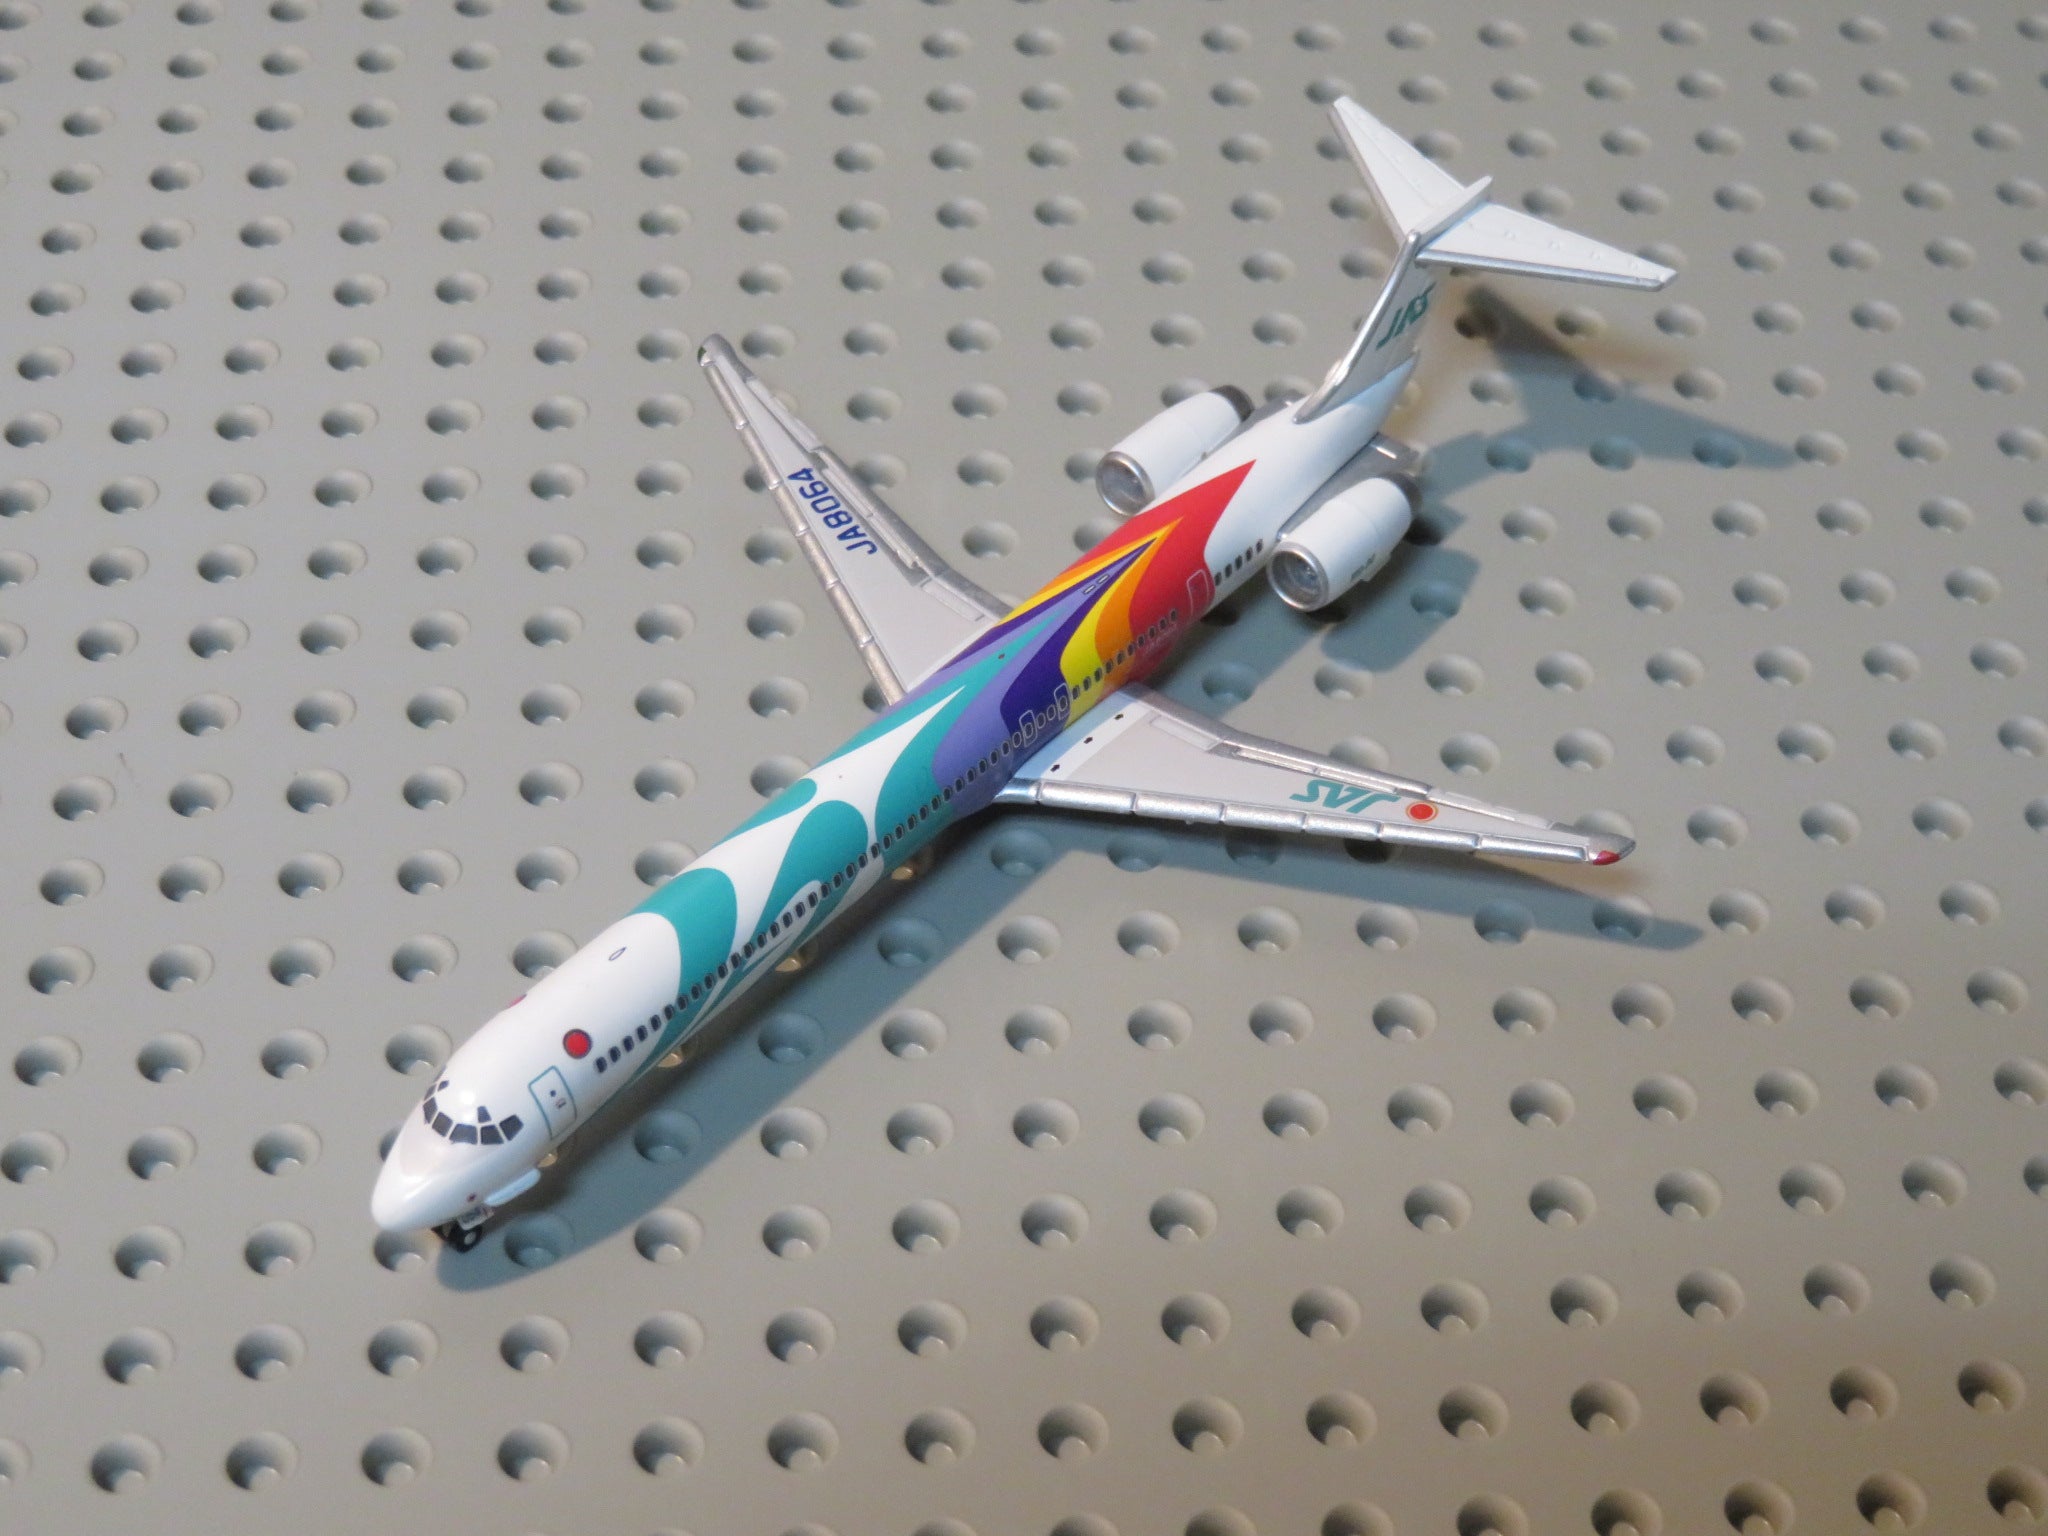 日本航空MDC-82旅客機JA 8064模型-